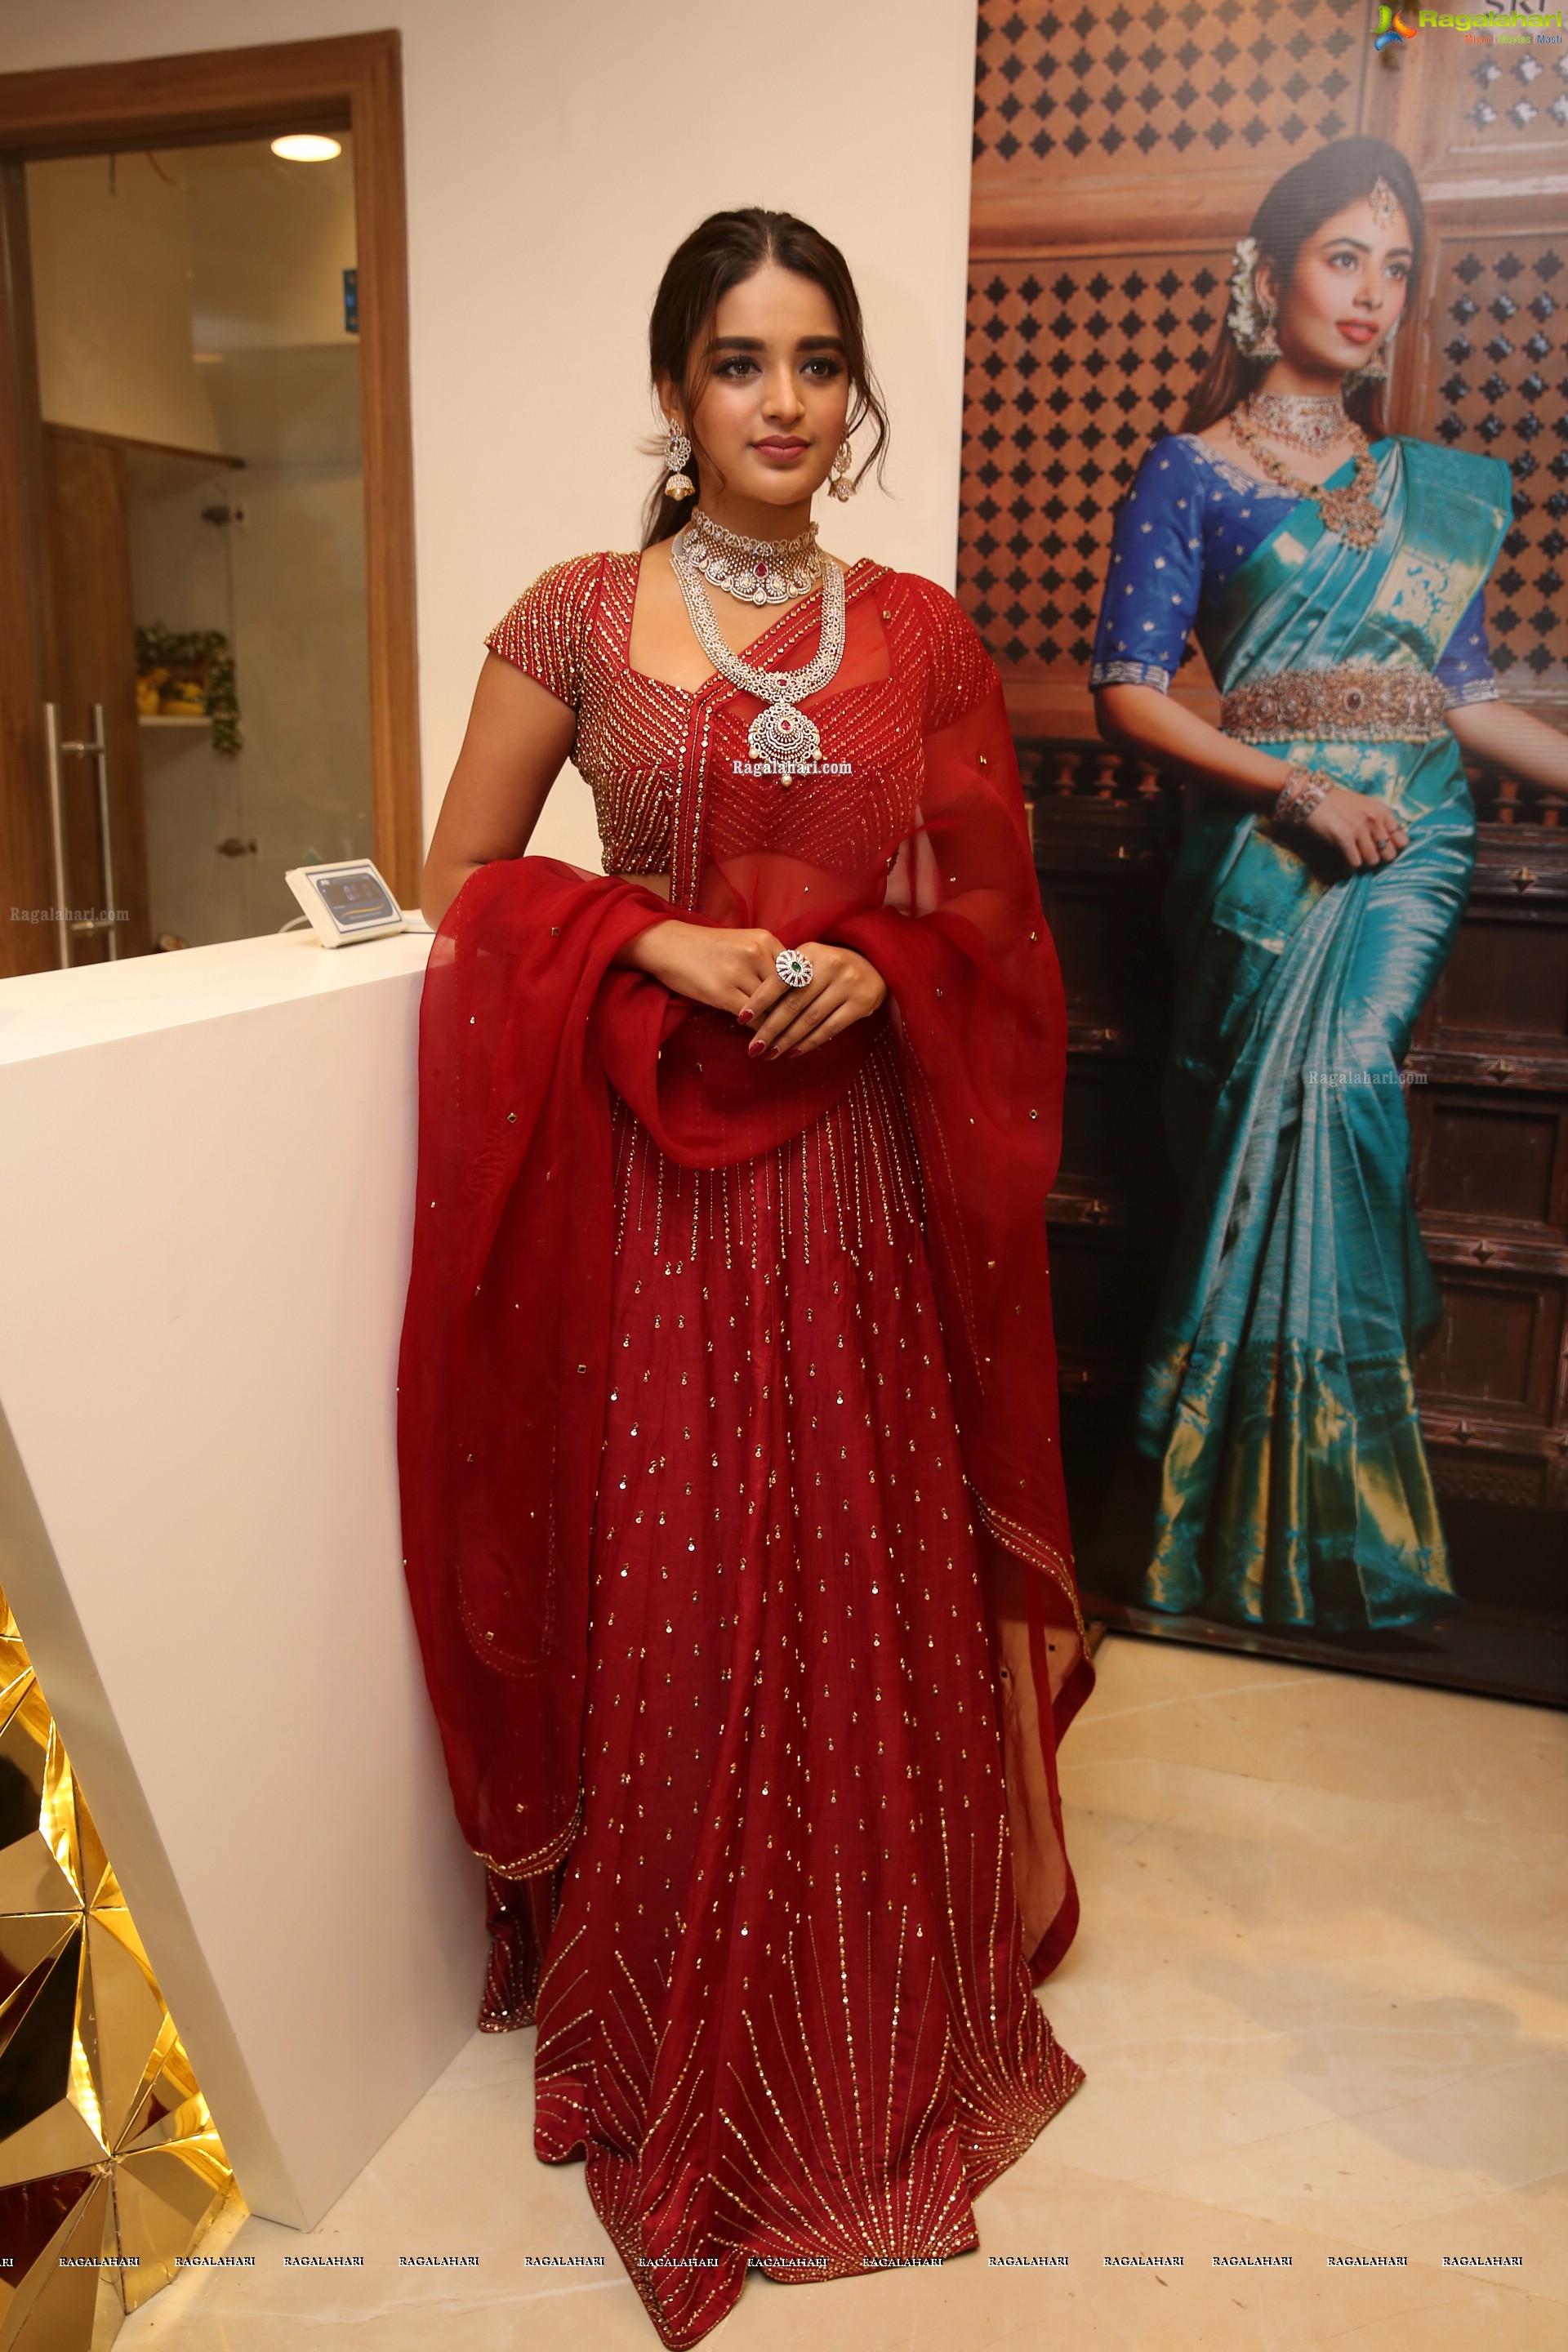 Nidhhi Agerwal at Sri Krishna Silks Launch at Banjara Hills - HD Gallery